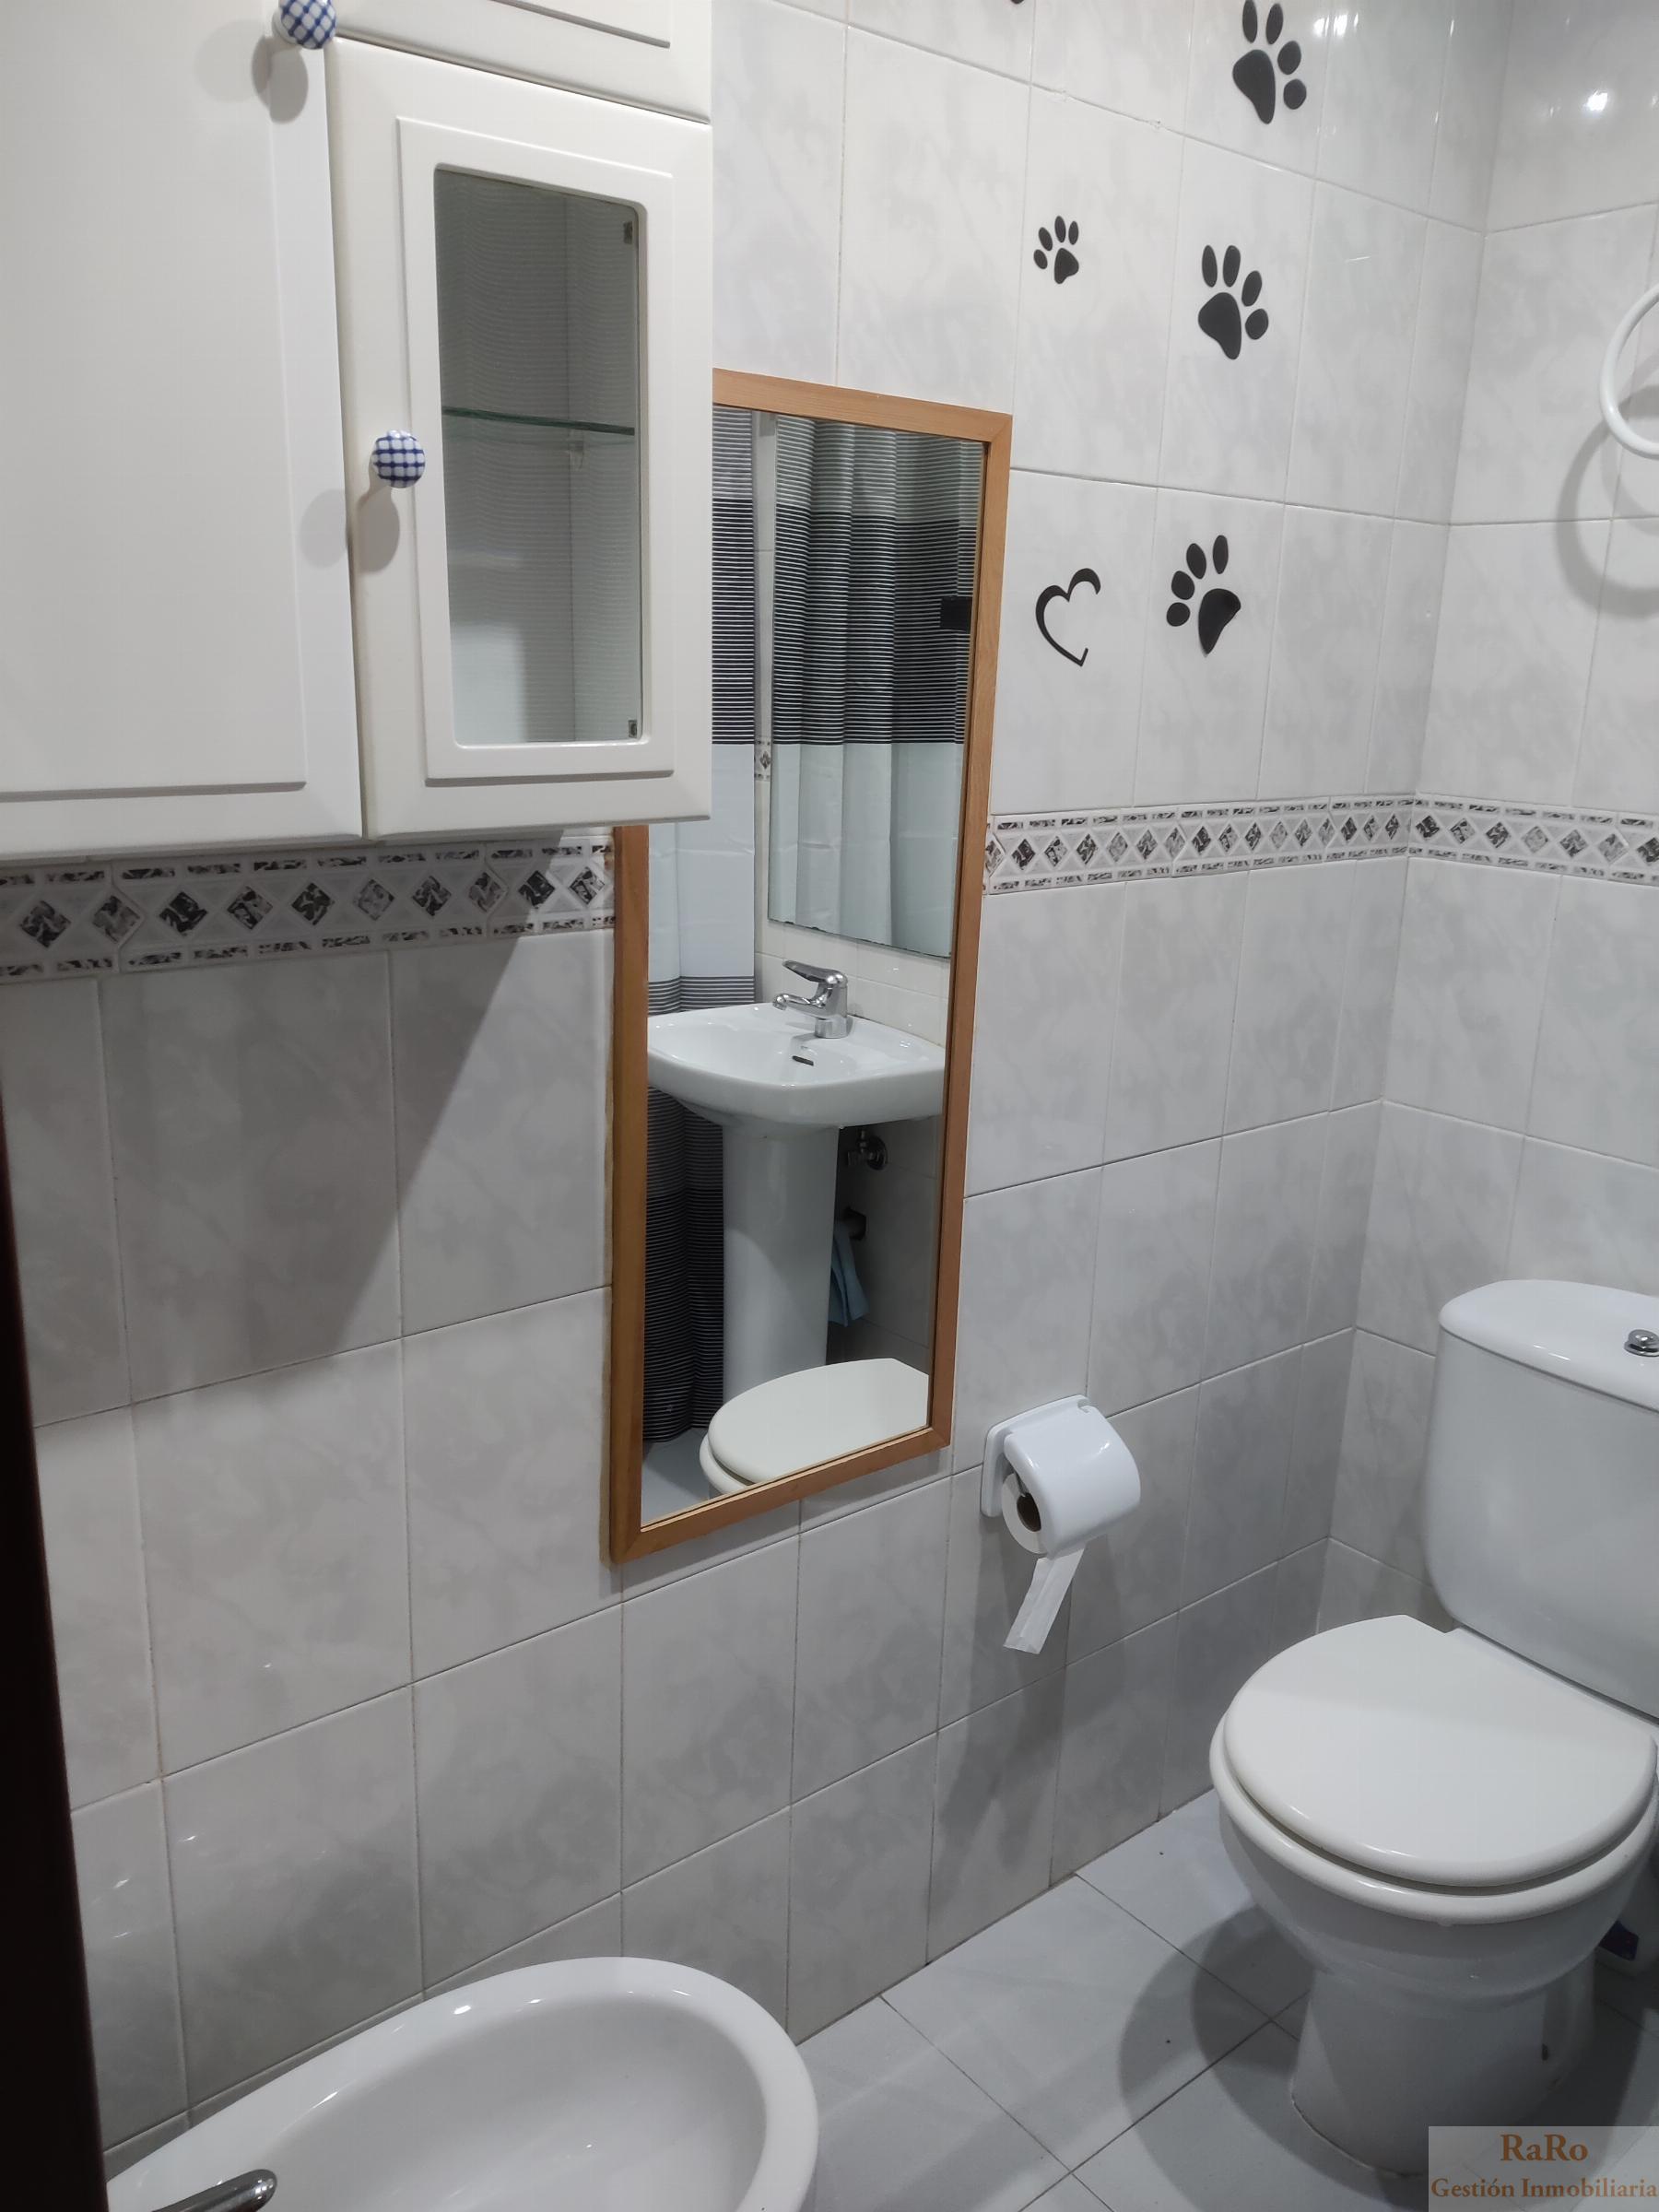 For rent of apartment in Leganés